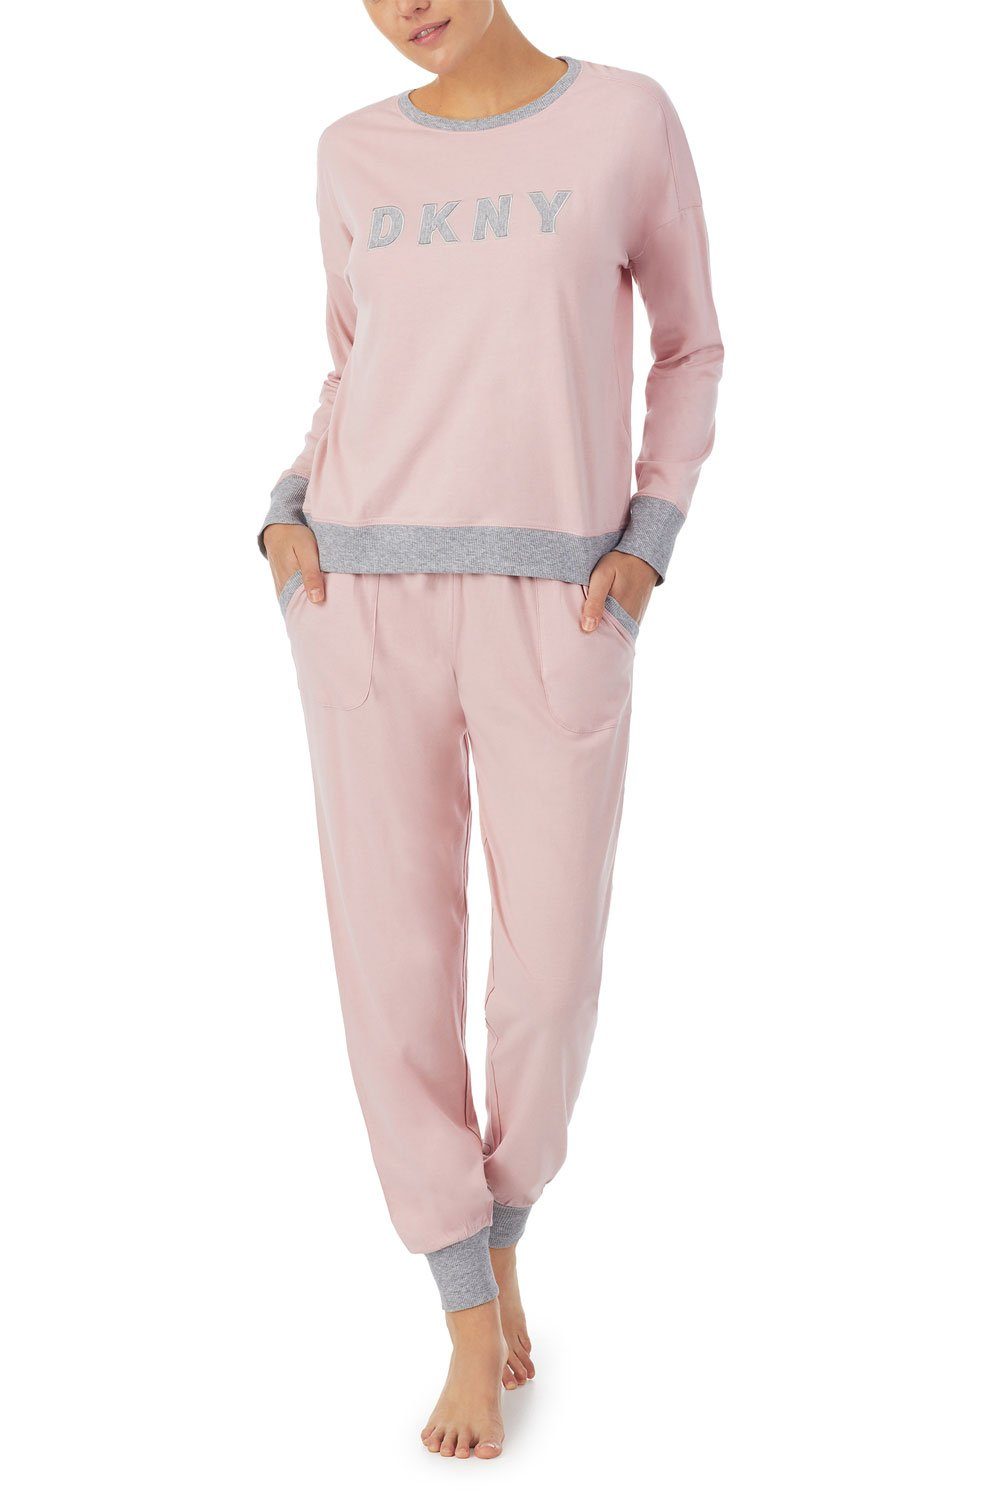 DKNY Pyjama Top & Jogger Set YI2919259 blush